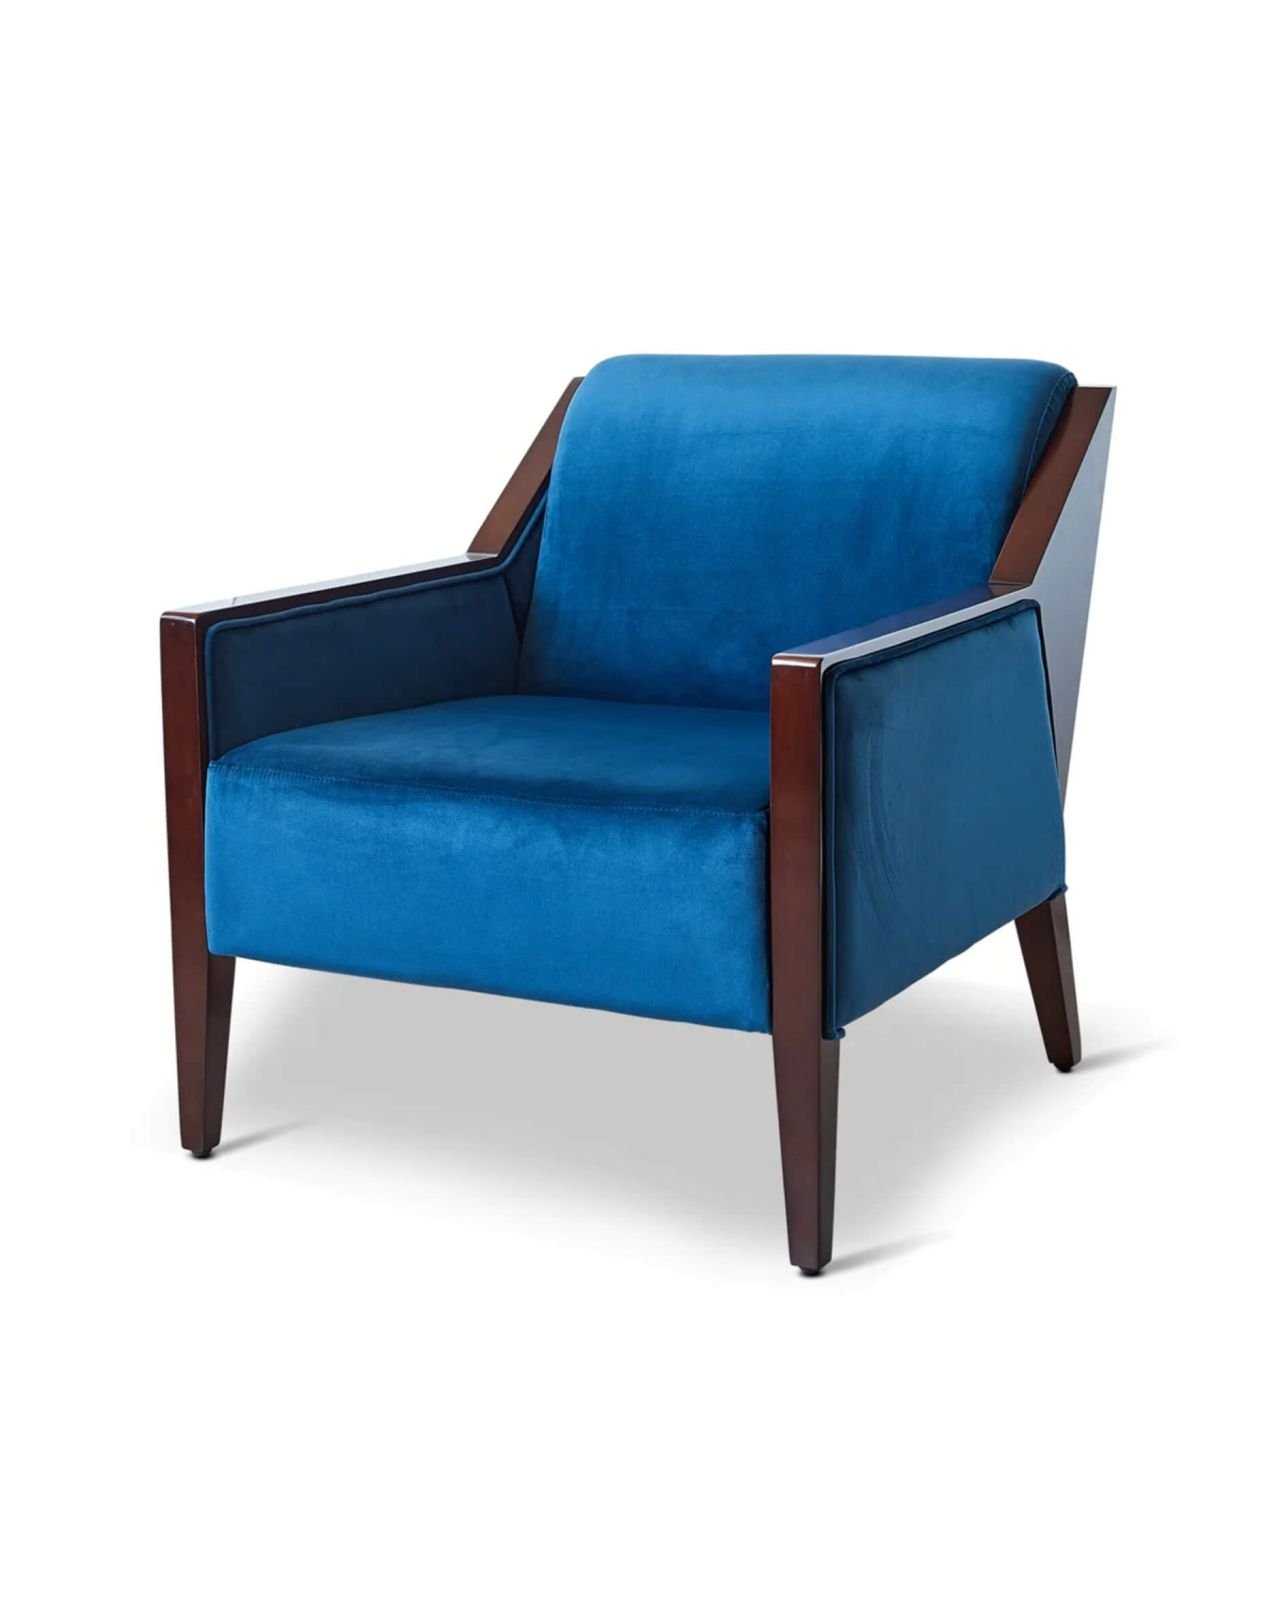 Club lounge chair blue